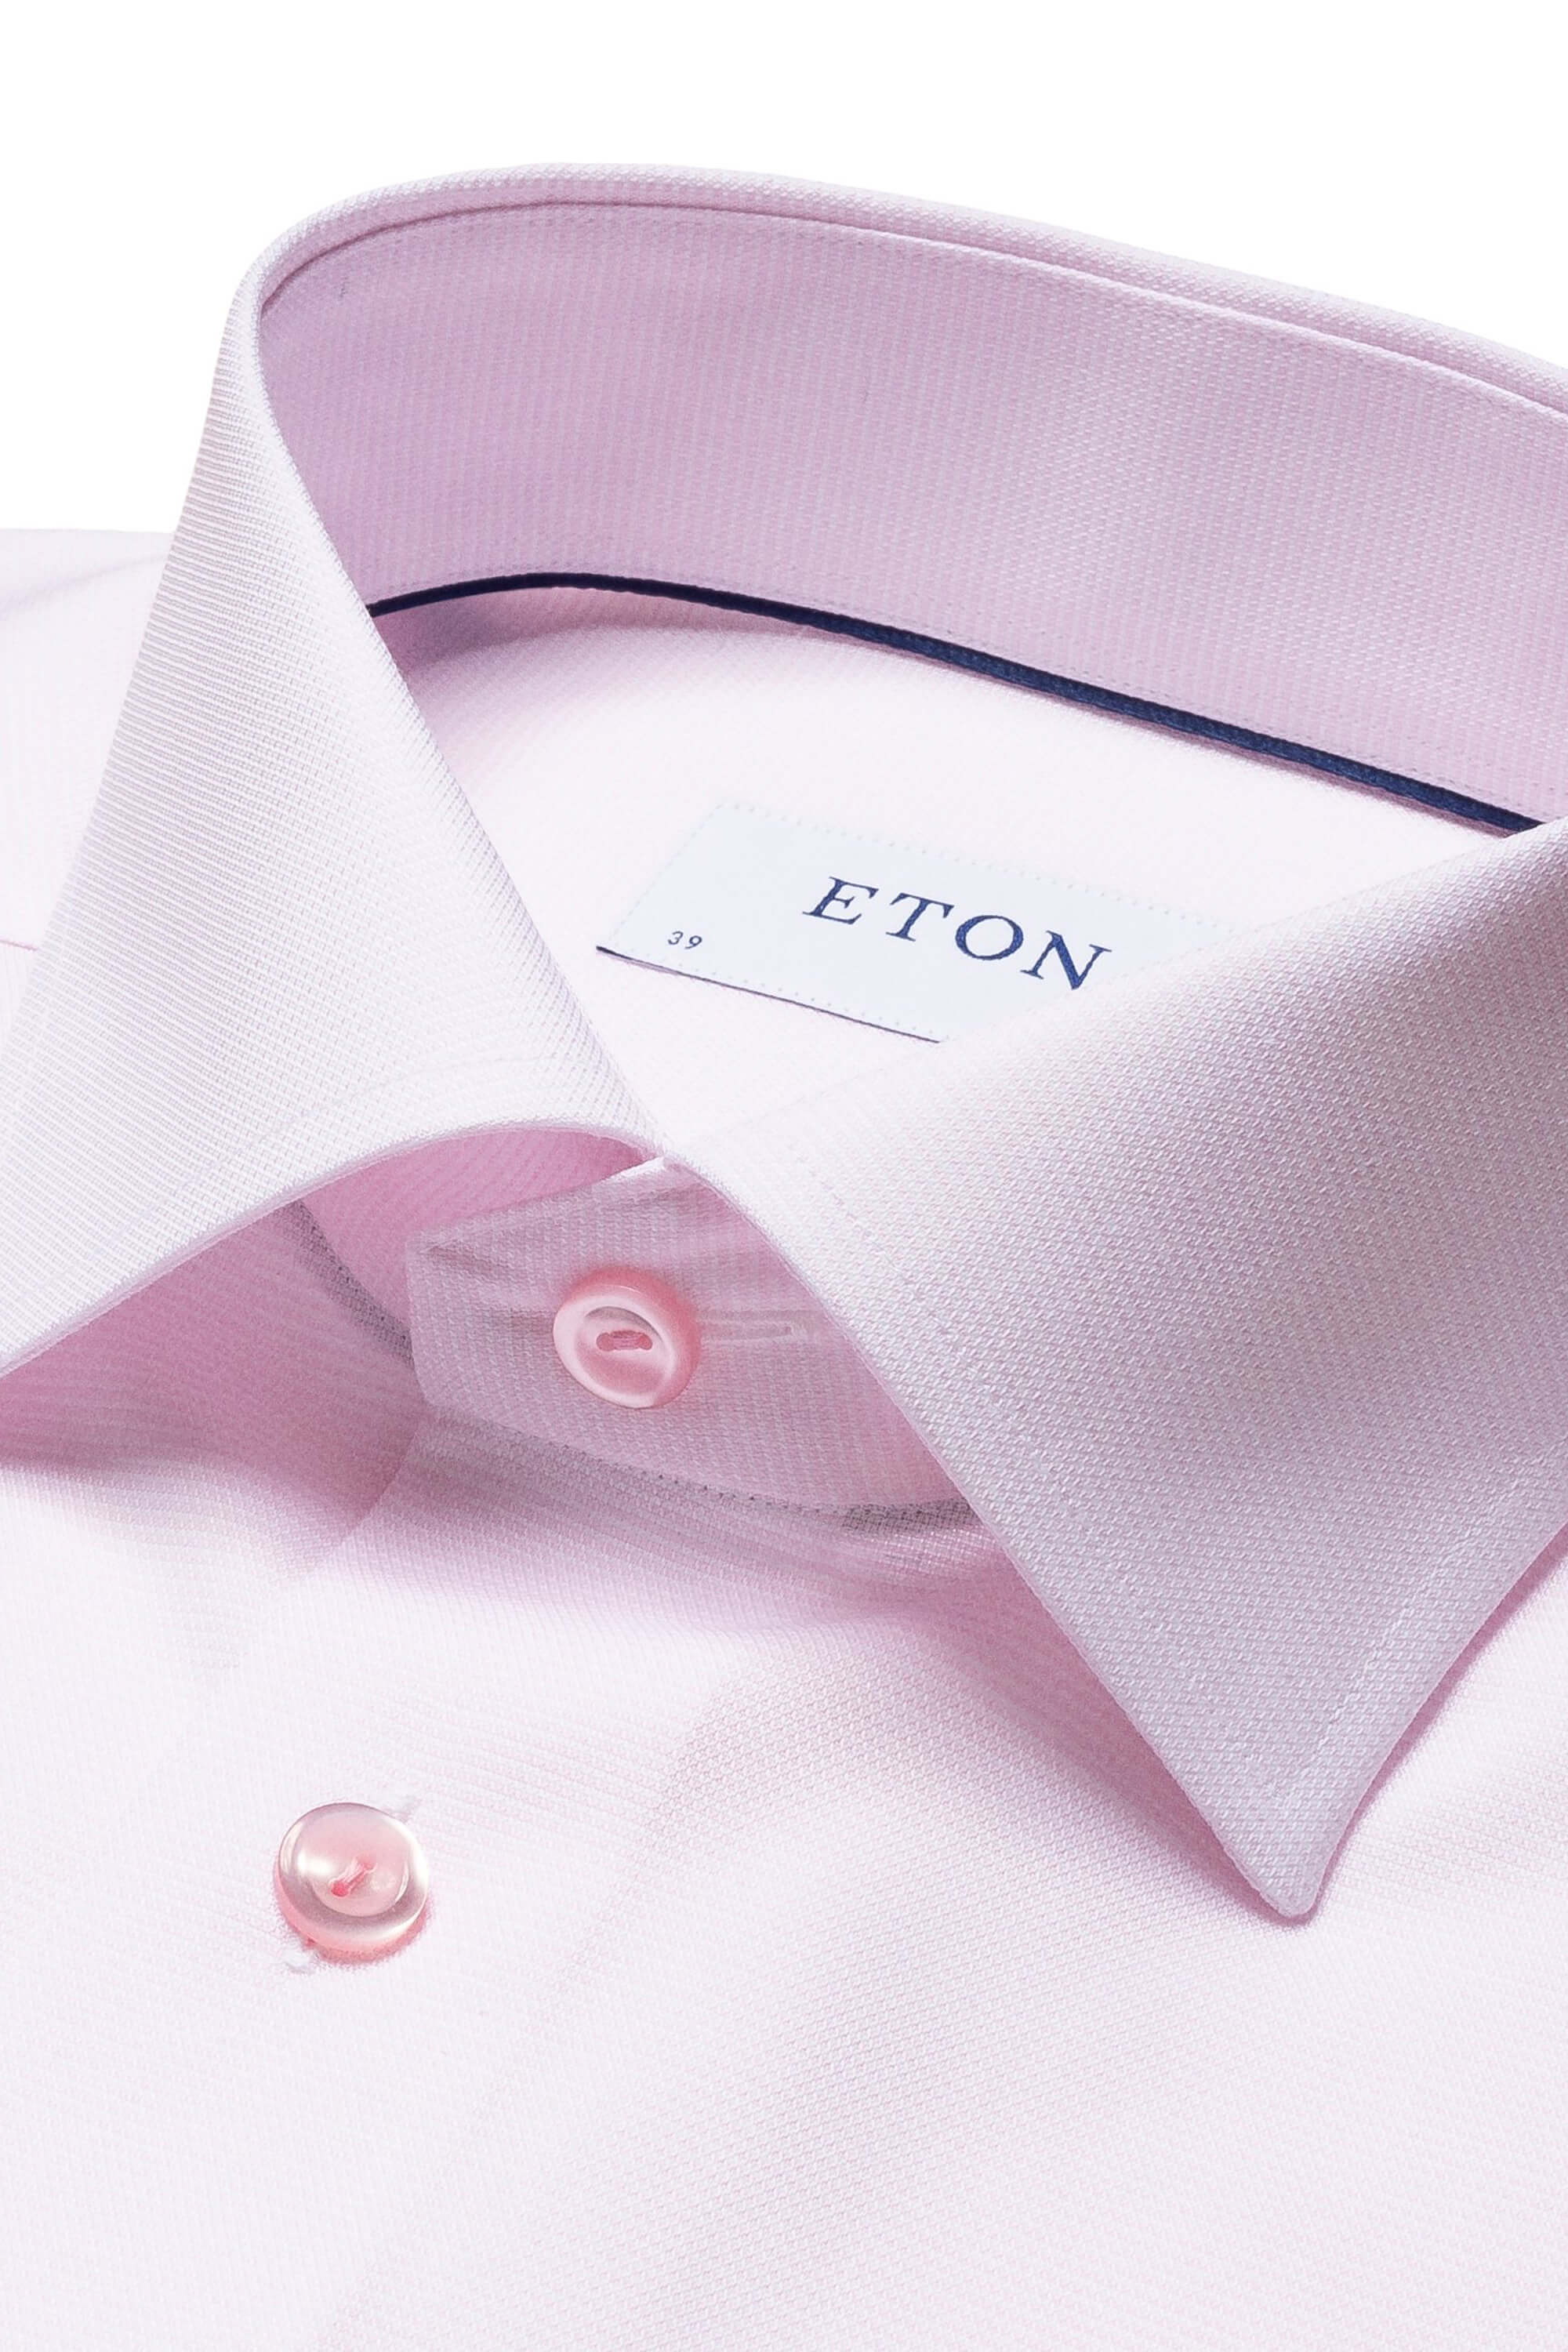 Eton Pink Twill Shirt